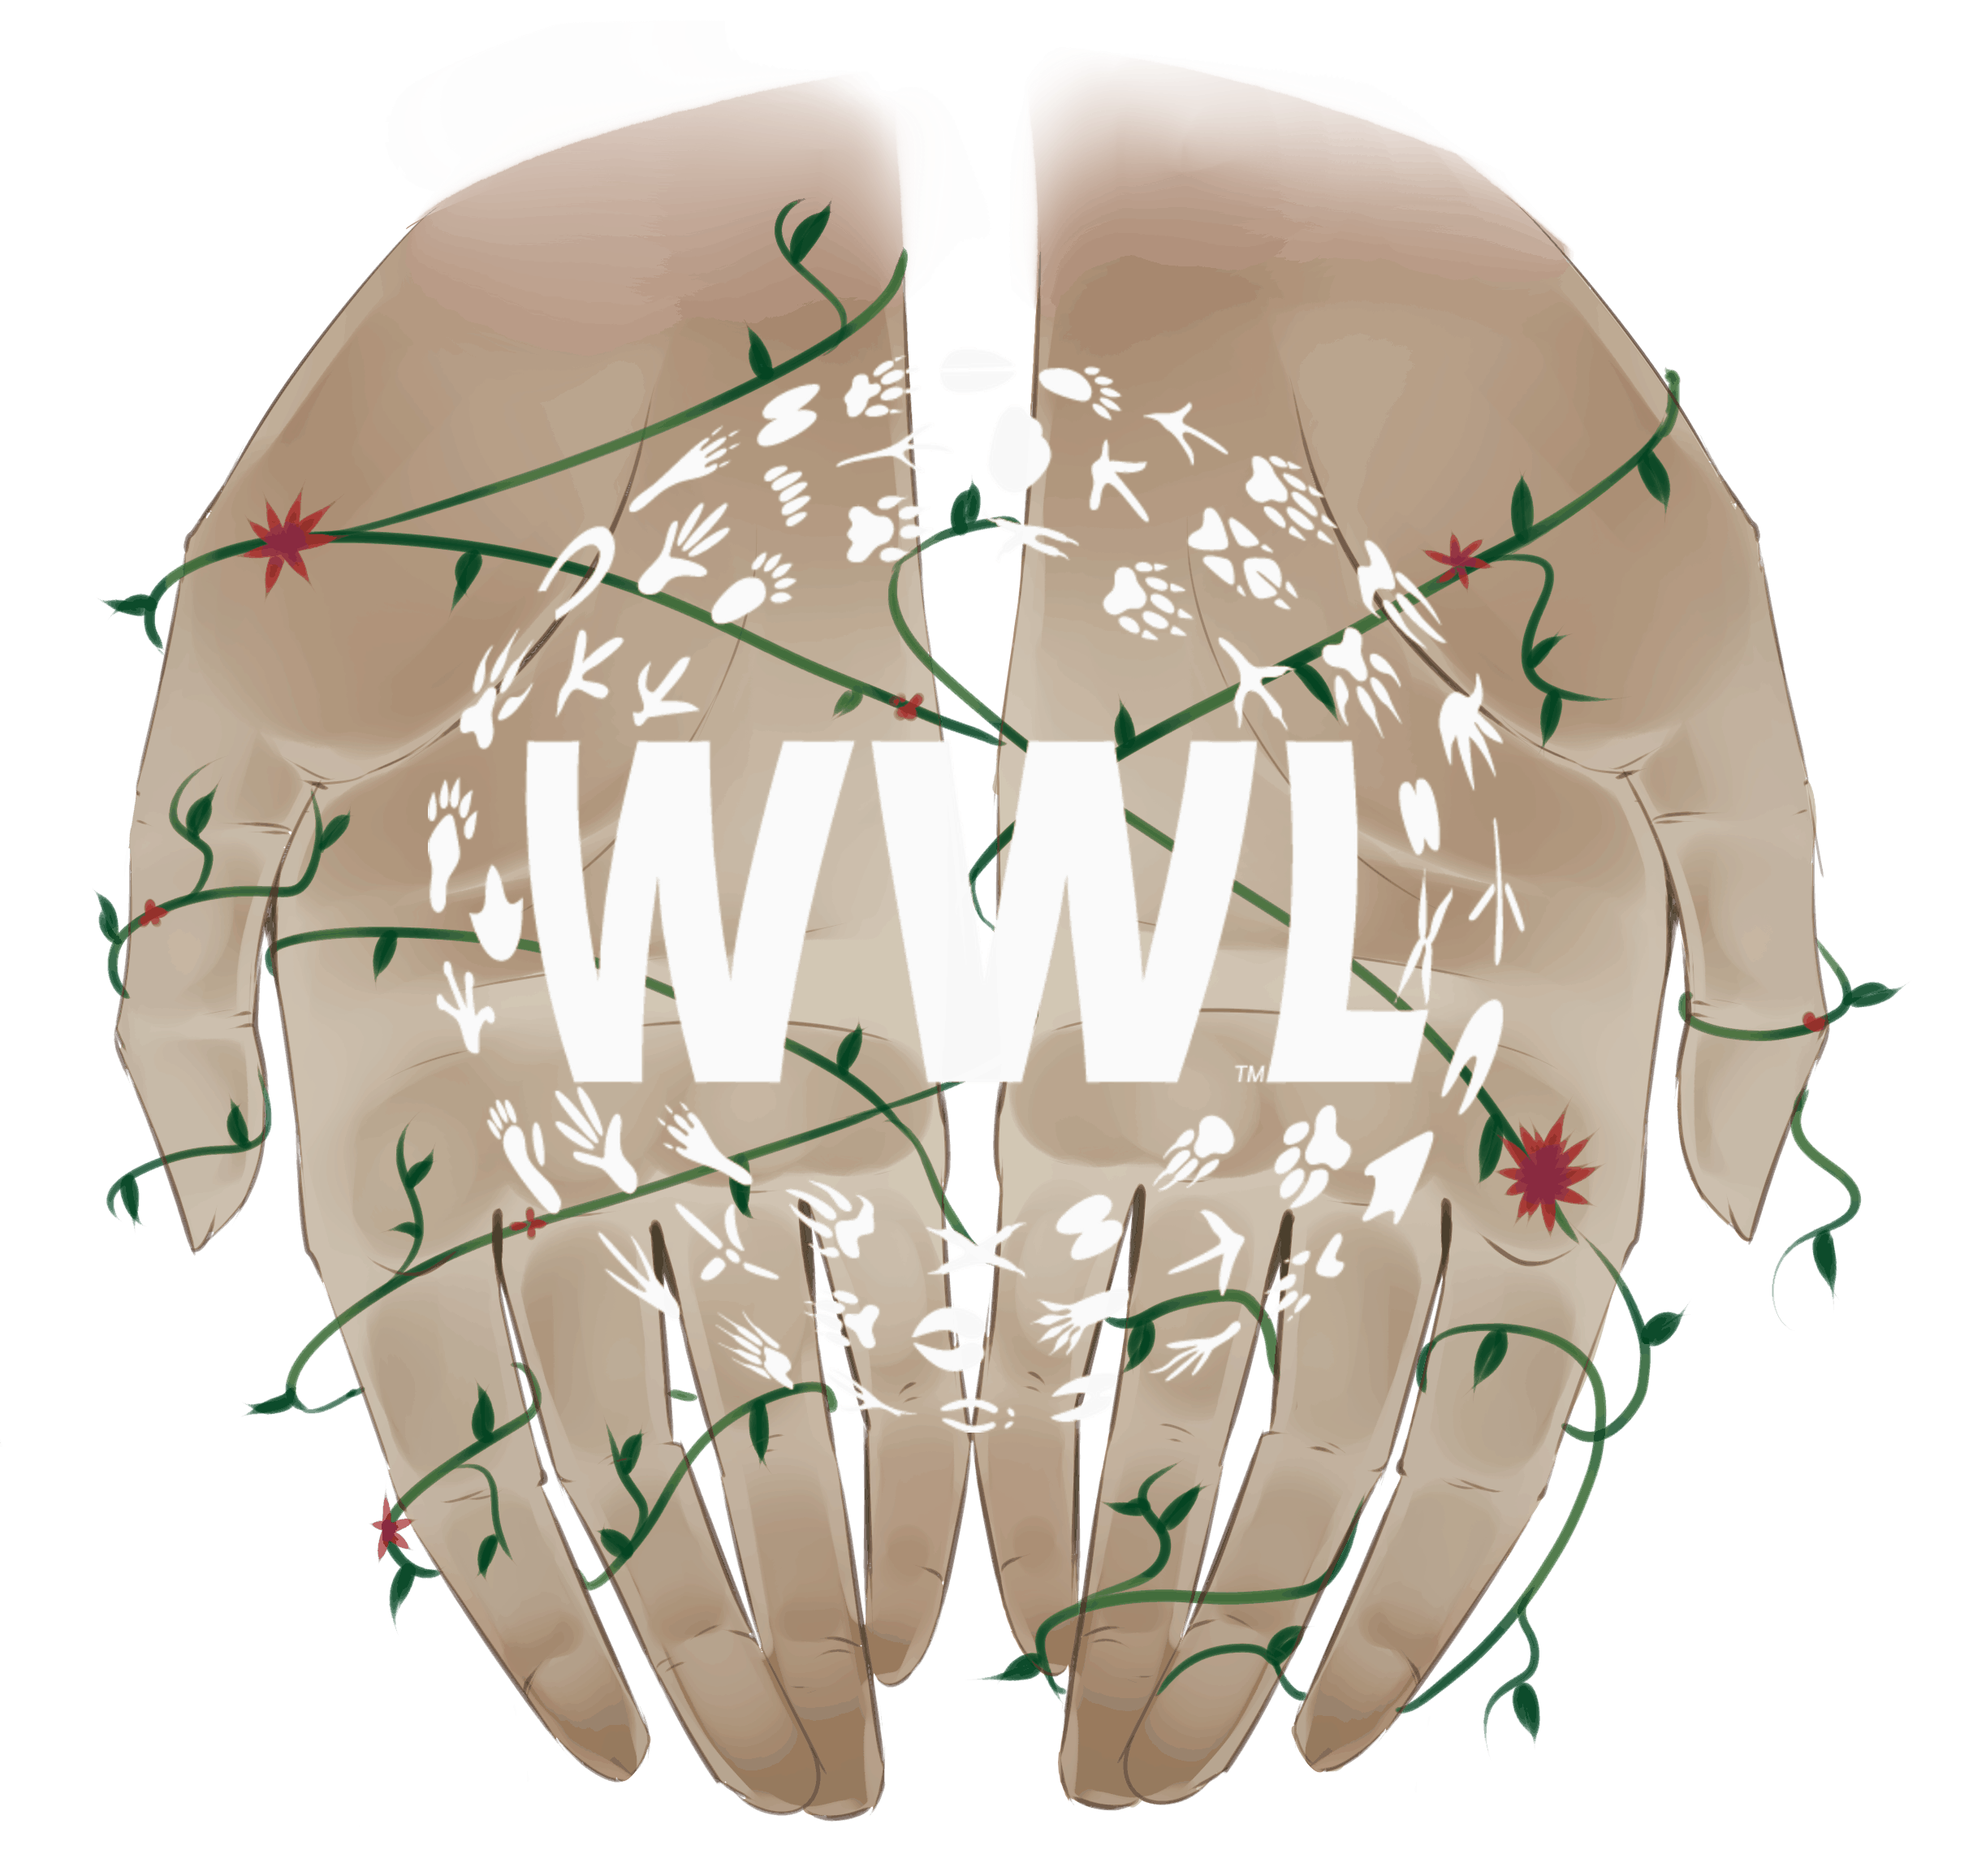 wwl wildlife app